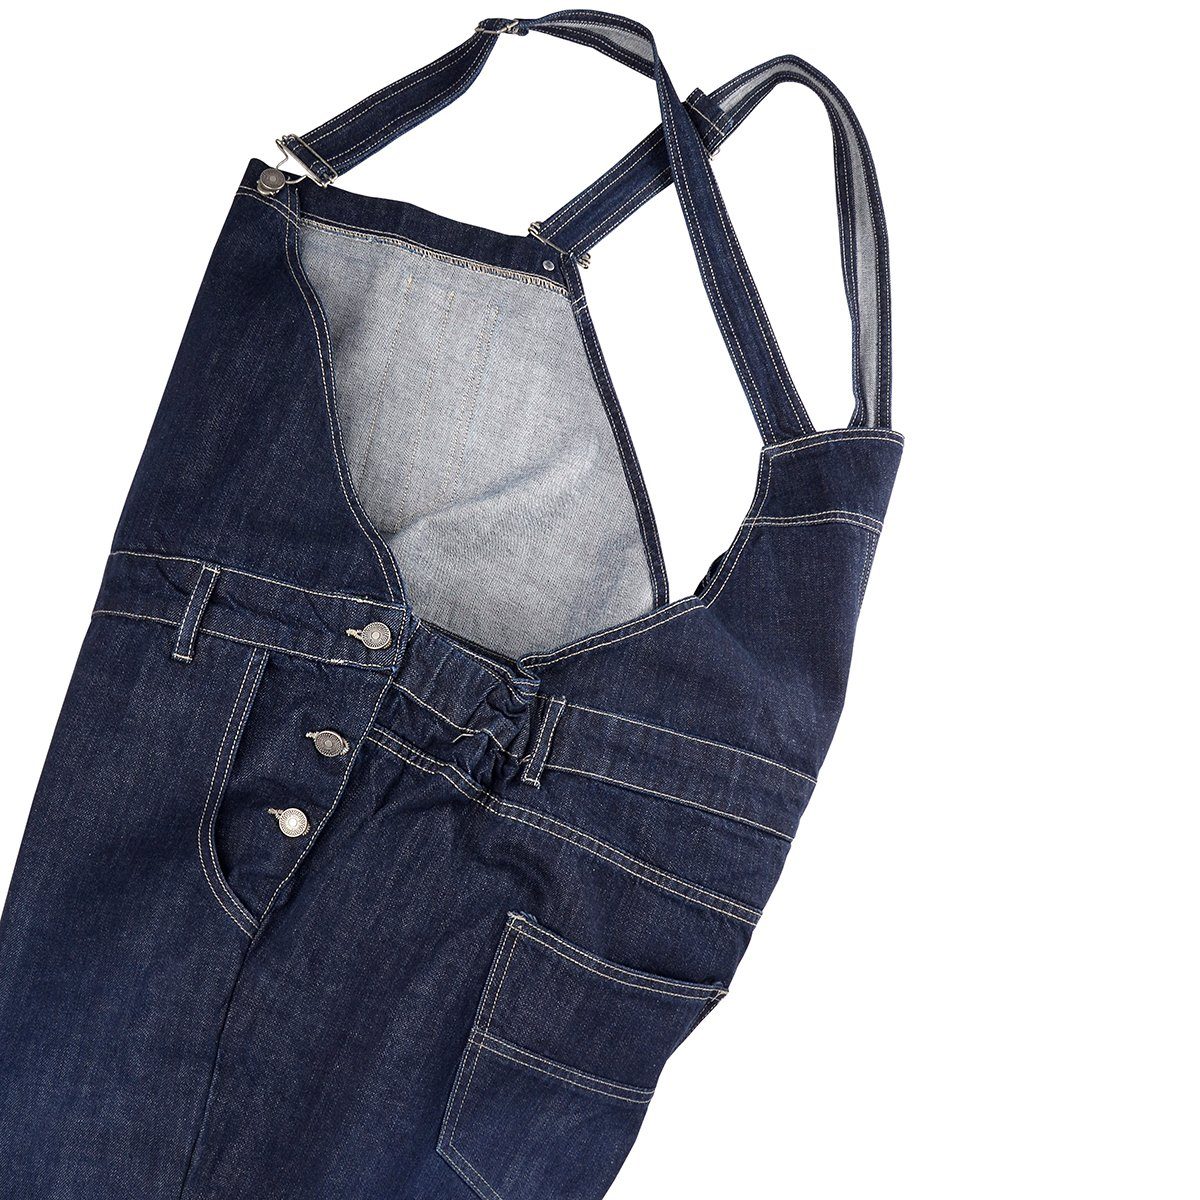 ABRAXAS Bequeme Übergrößen blue stonewash Jeans-Latzhose Abraxas Jeans